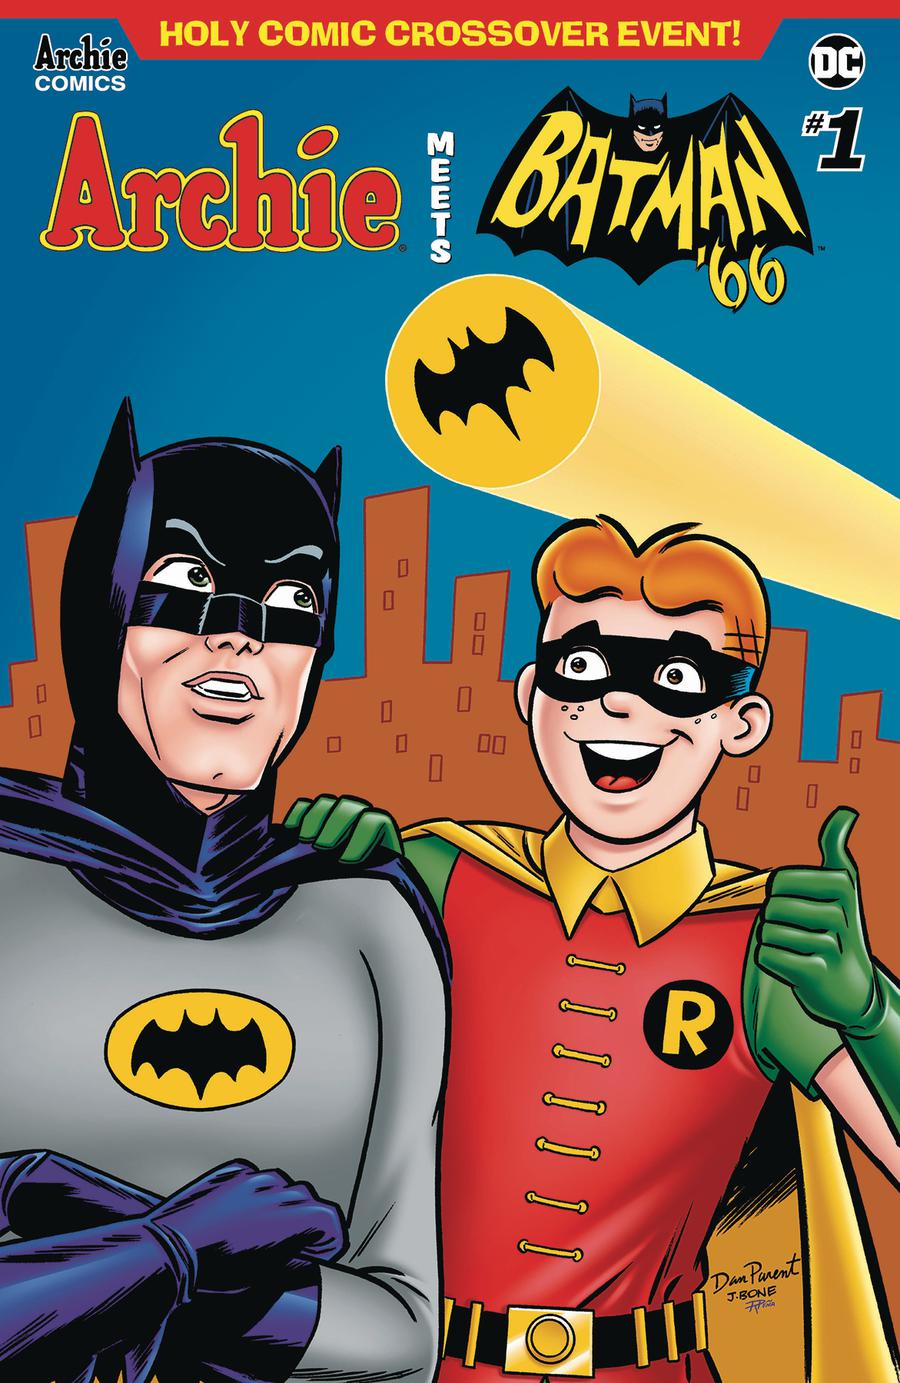 Archie Meets Batman 66 #1 Cover E Variant Dan Parent & J Bone Cover